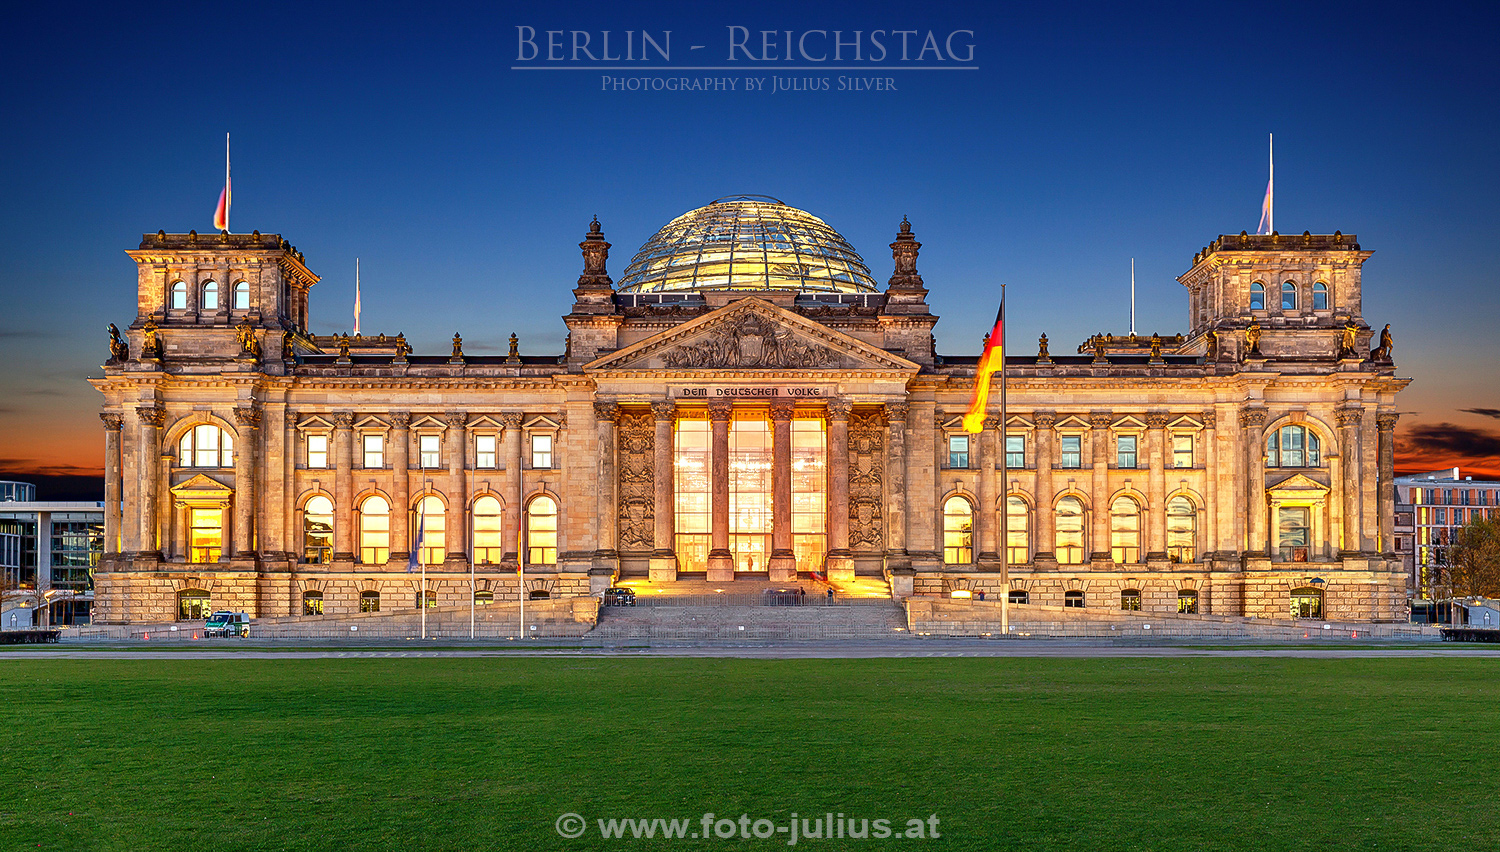 Berlin086a_Reichstag_Bundestag.jpg, 896kB